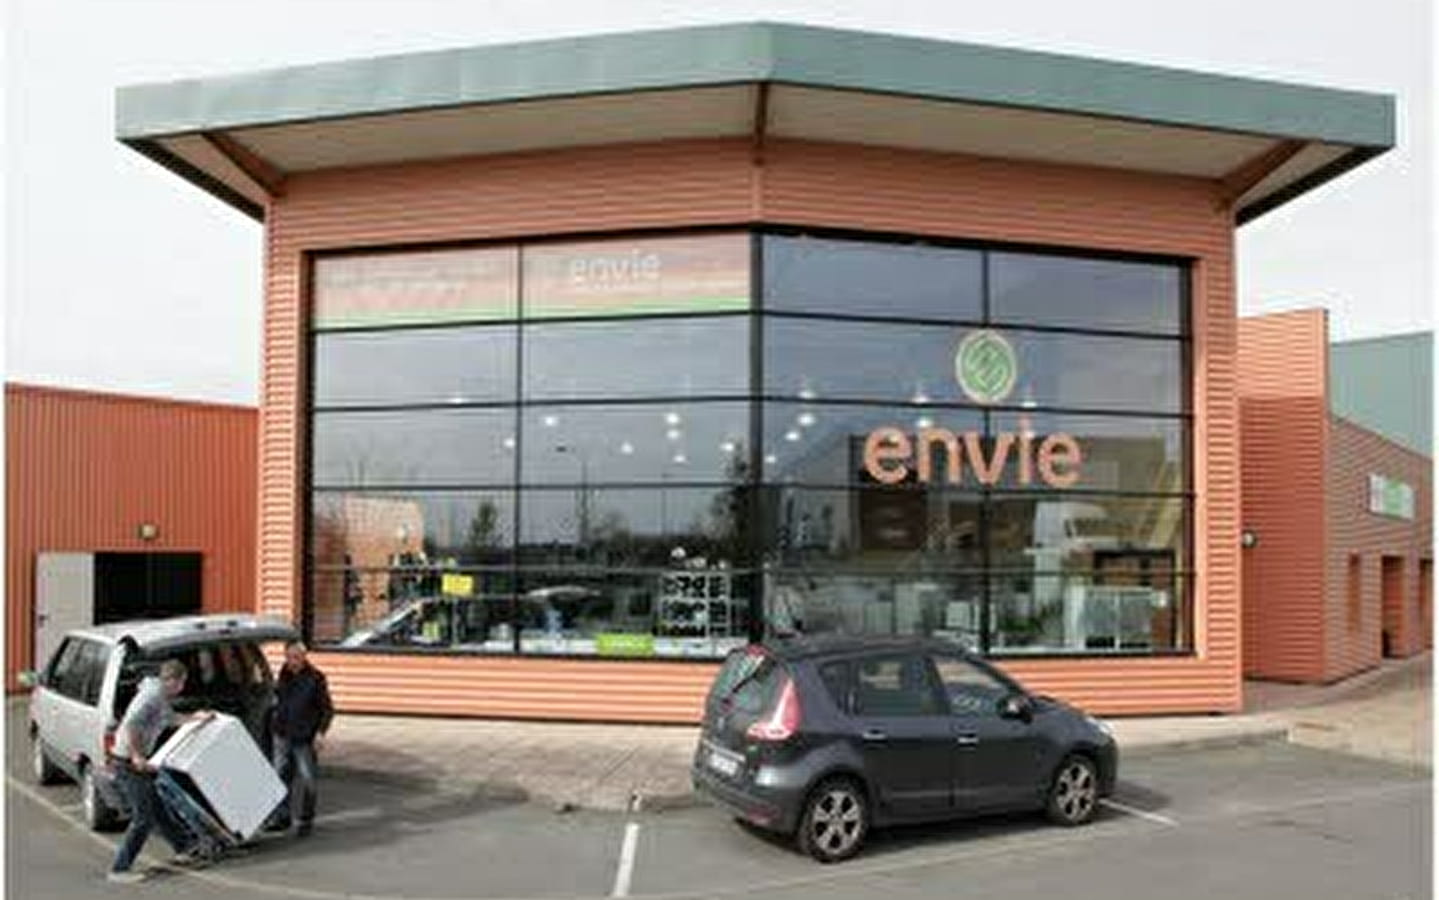 Visit 123 Nature: ENVIe Franche-Comté workshop and shop